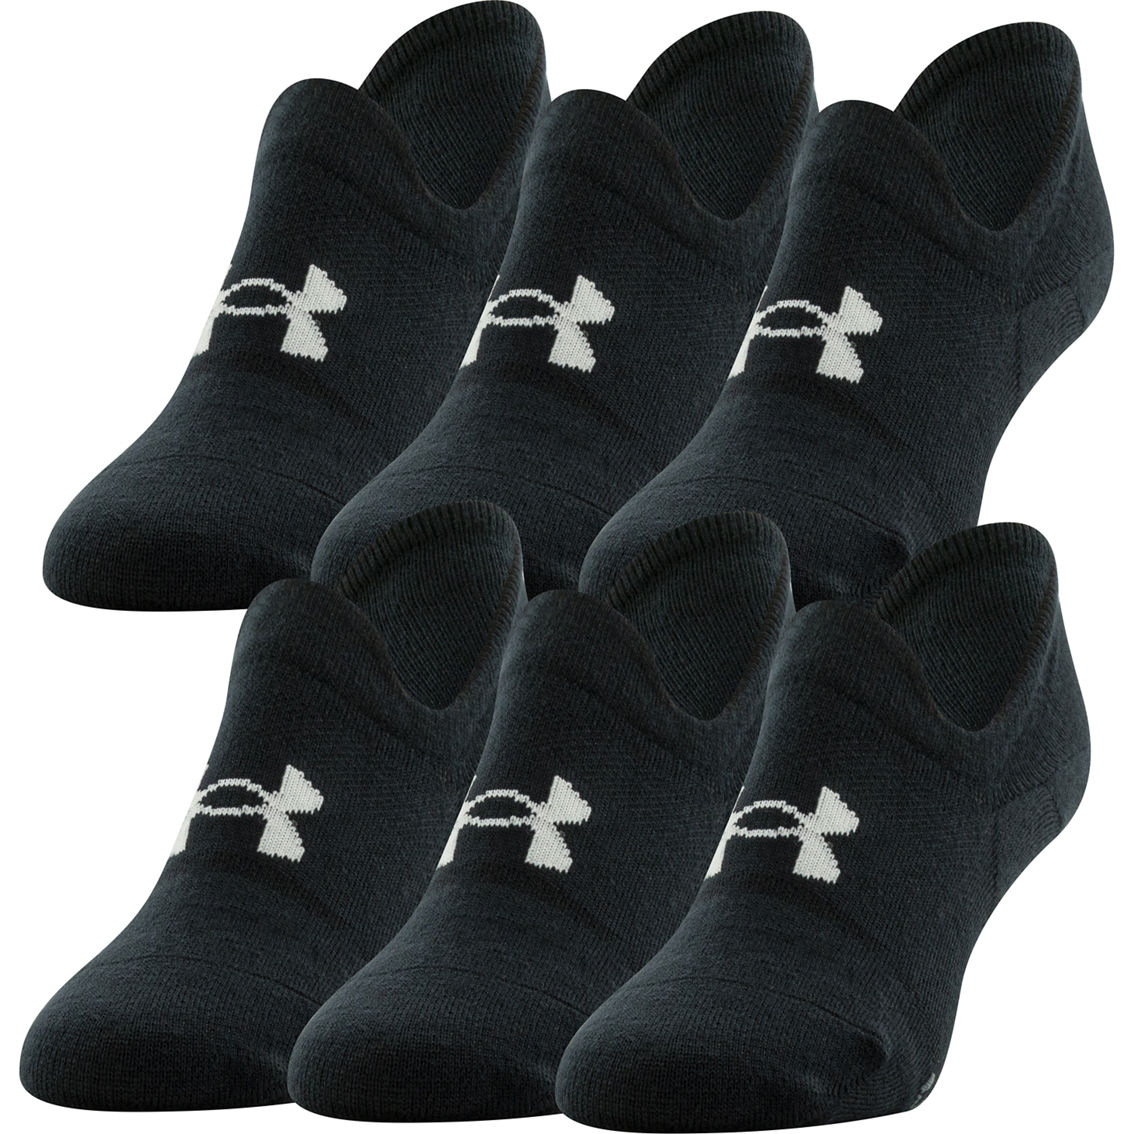 Under Armour Essential Ultra Low Tab Socks, 6 Pk. | Socks & Tights ...